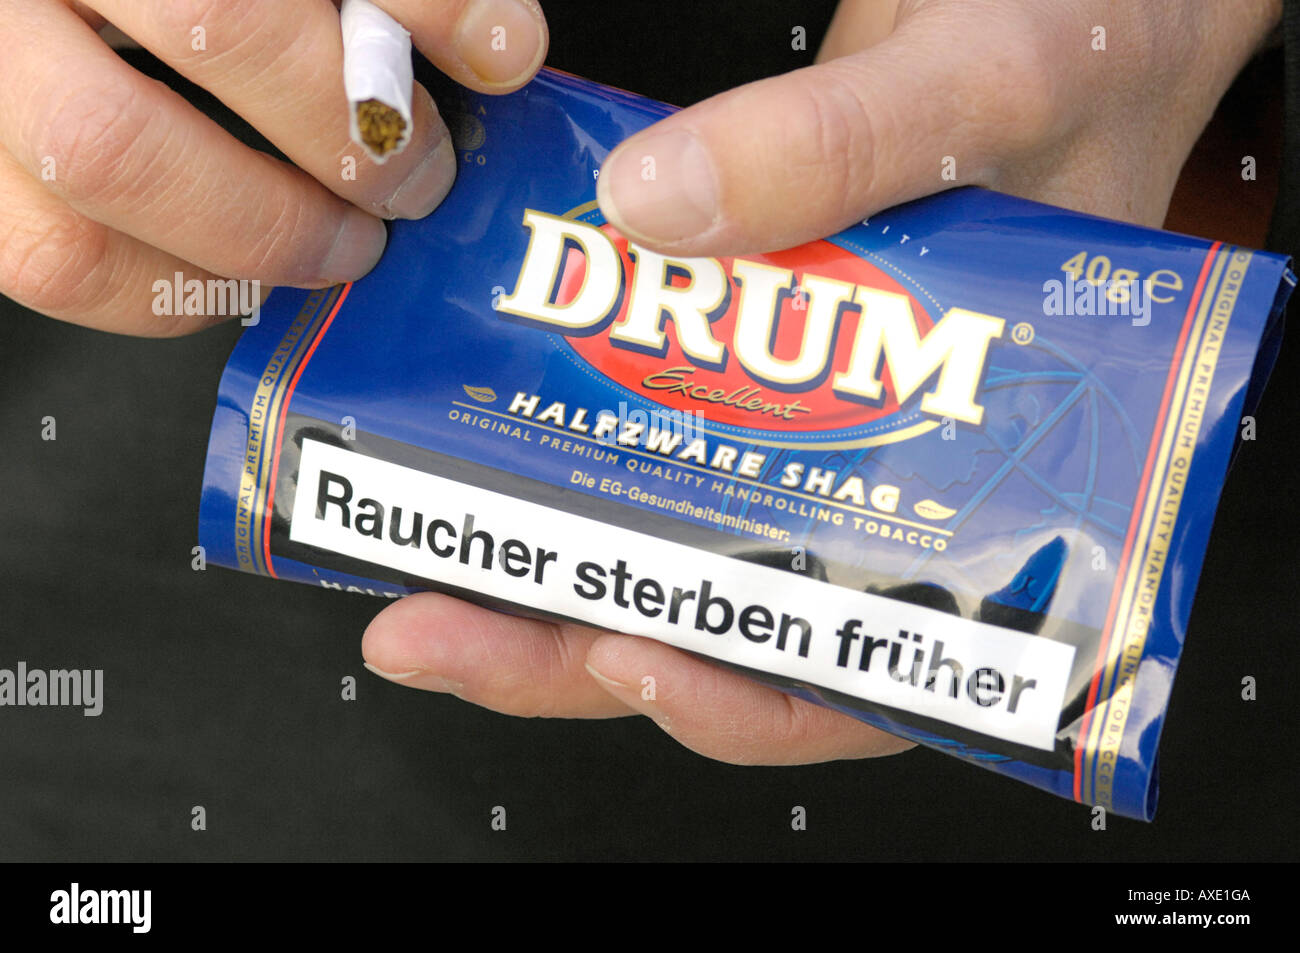 DRUM Tabak Zigarette - "Raucher sterben früher" Stockfoto